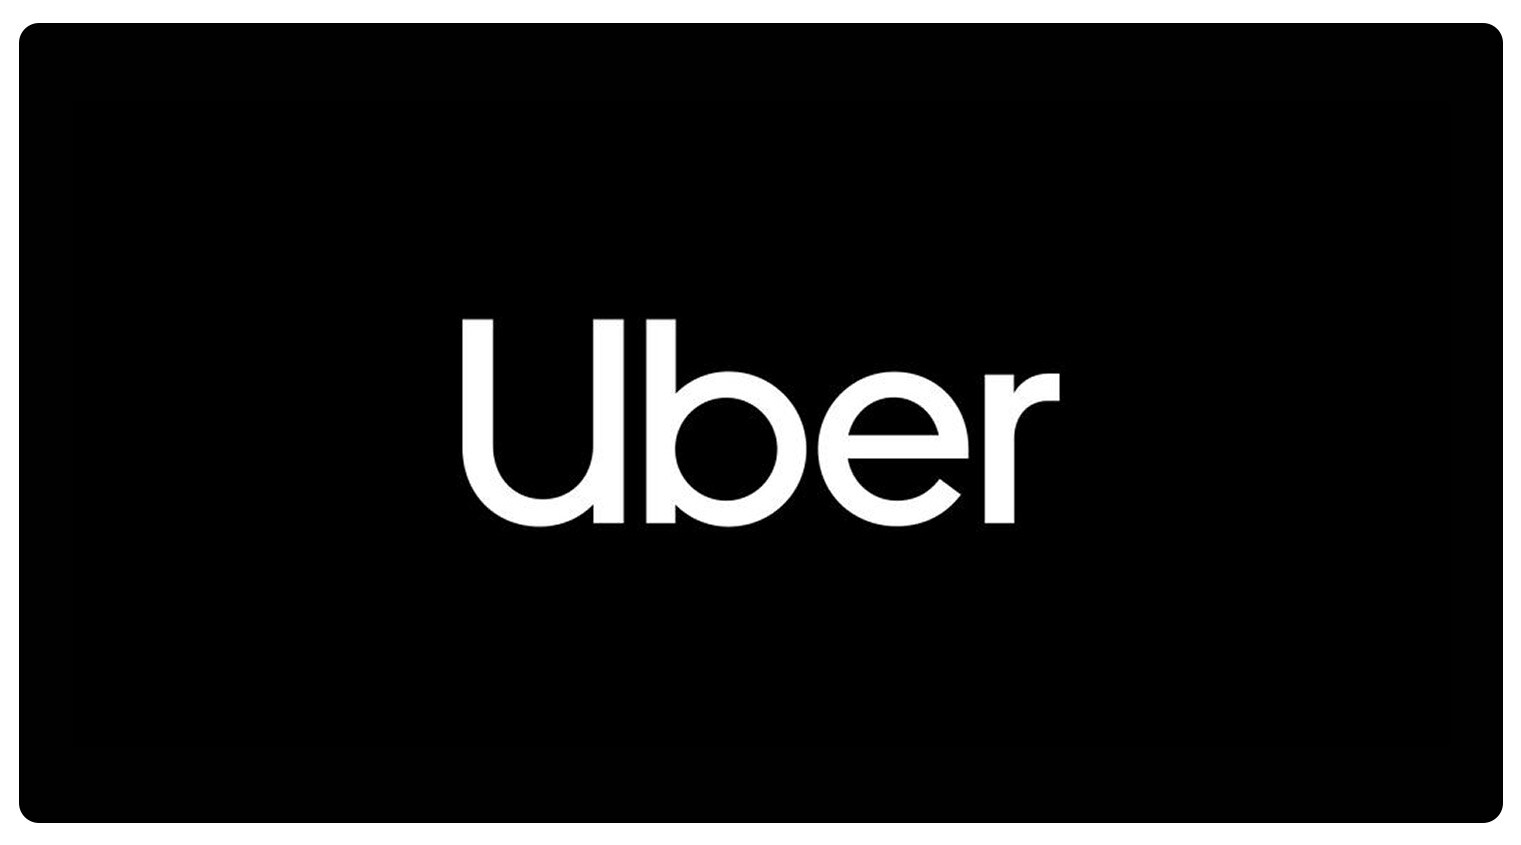 Uber logo on a black background